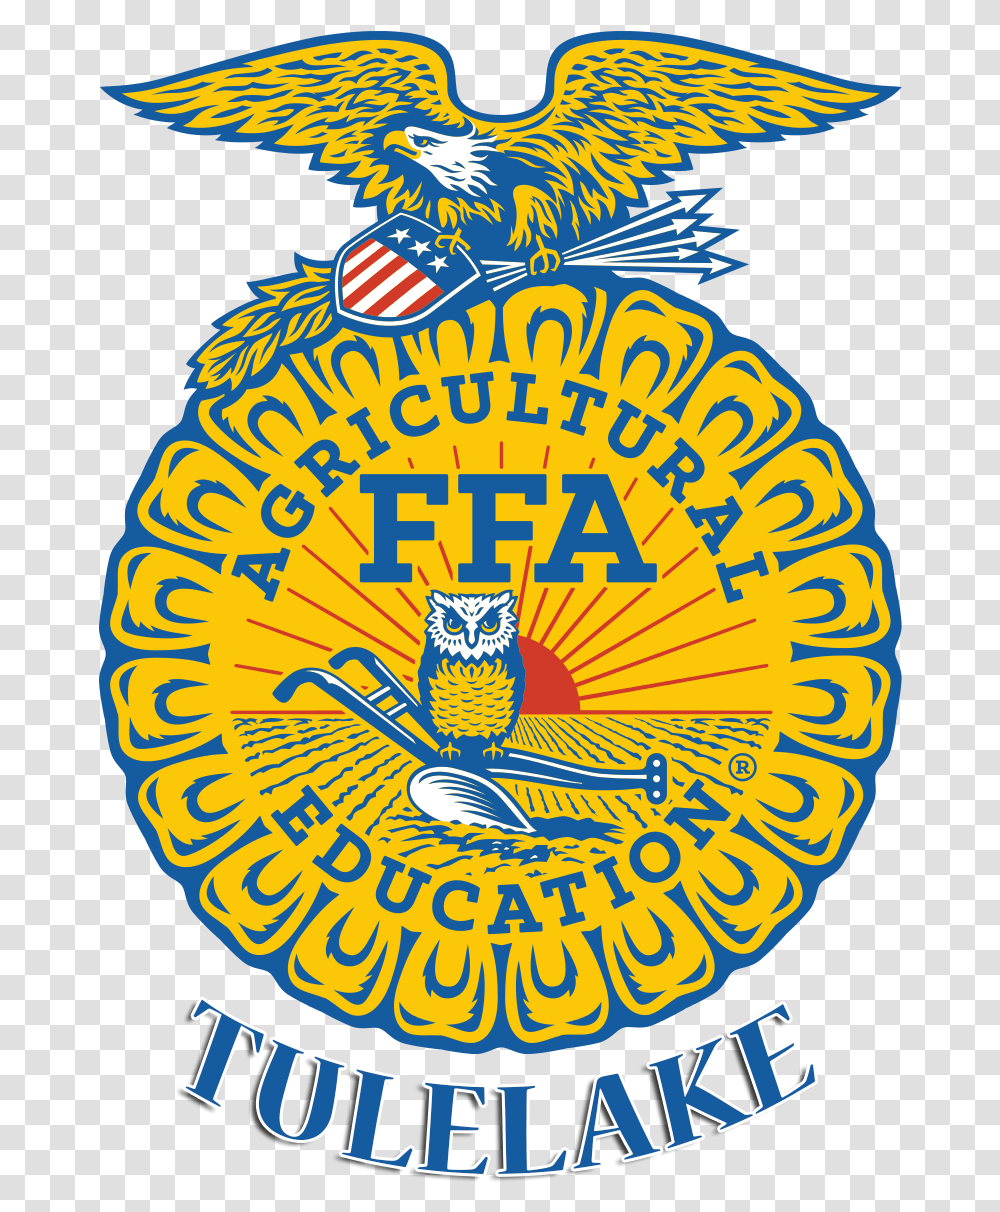 Background Ffa Emblem, Label, Logo Transparent Png